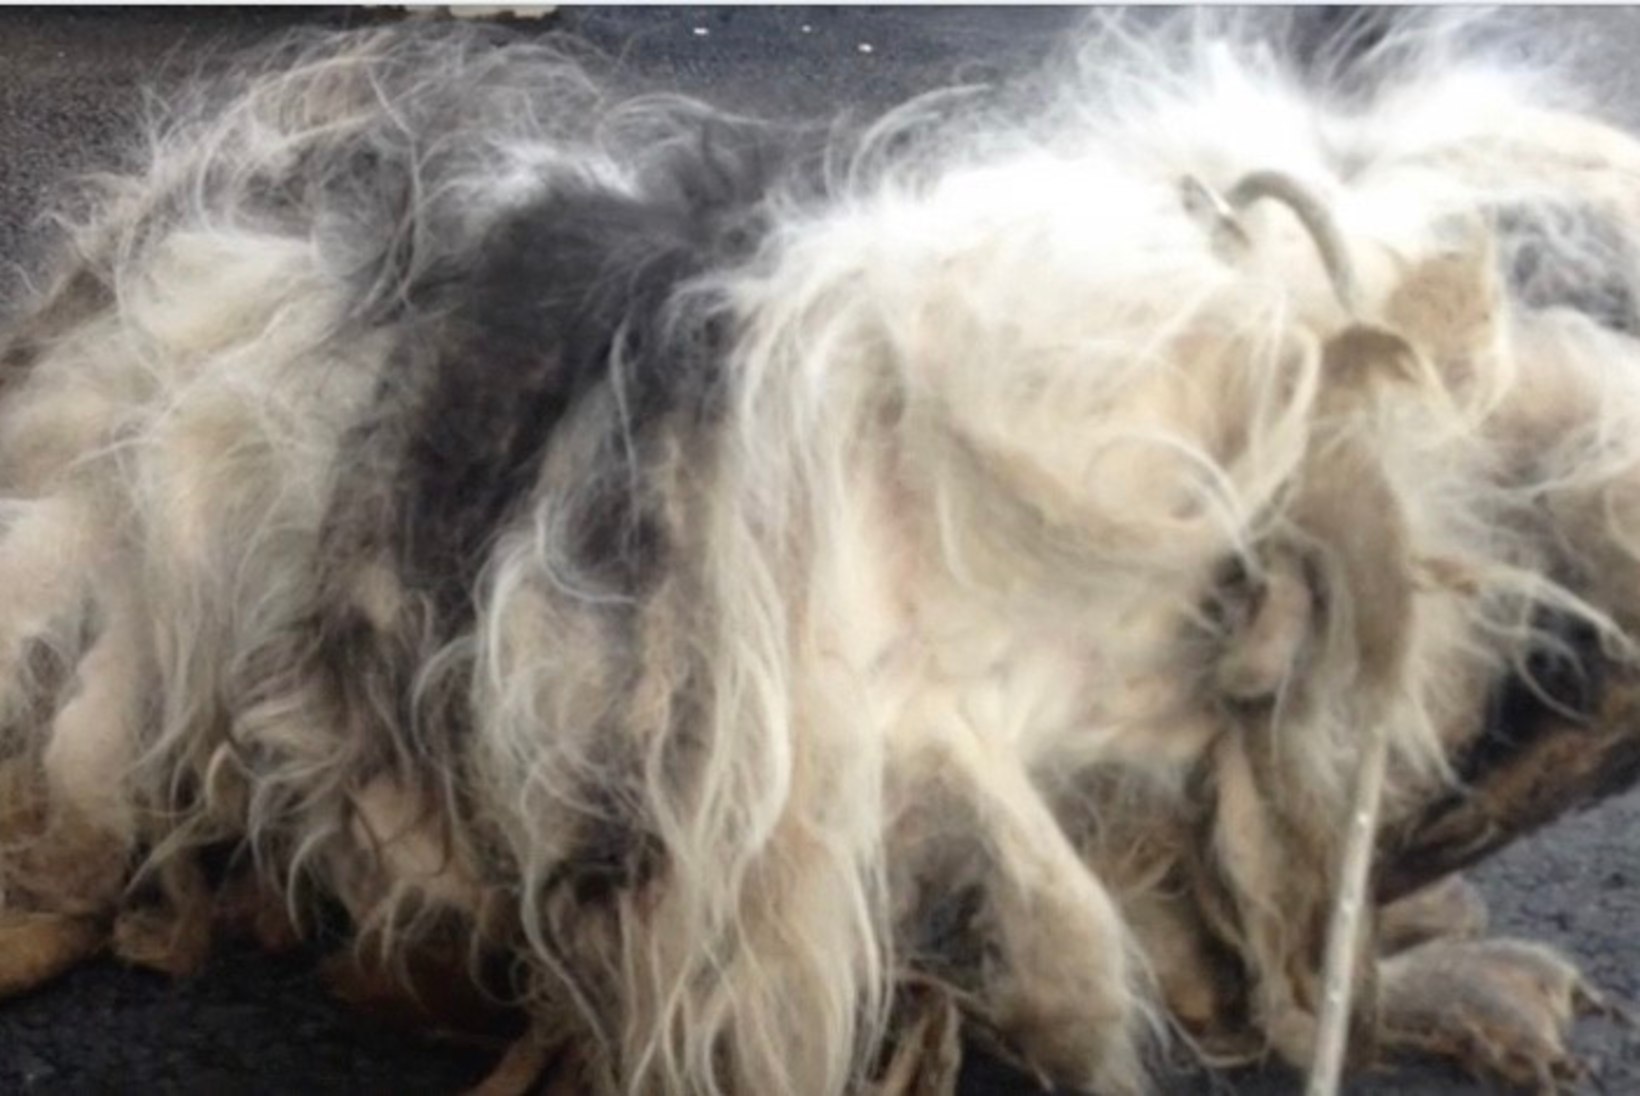 ÕÕVASTAVAD KAADRID: varjupaiga ukse taha jäeti pulstunud ja väljaheiteid täis kasukaga koer, kes haises hingematvalt ning kelle pikad küüned ei võimaldanud tal kõndida